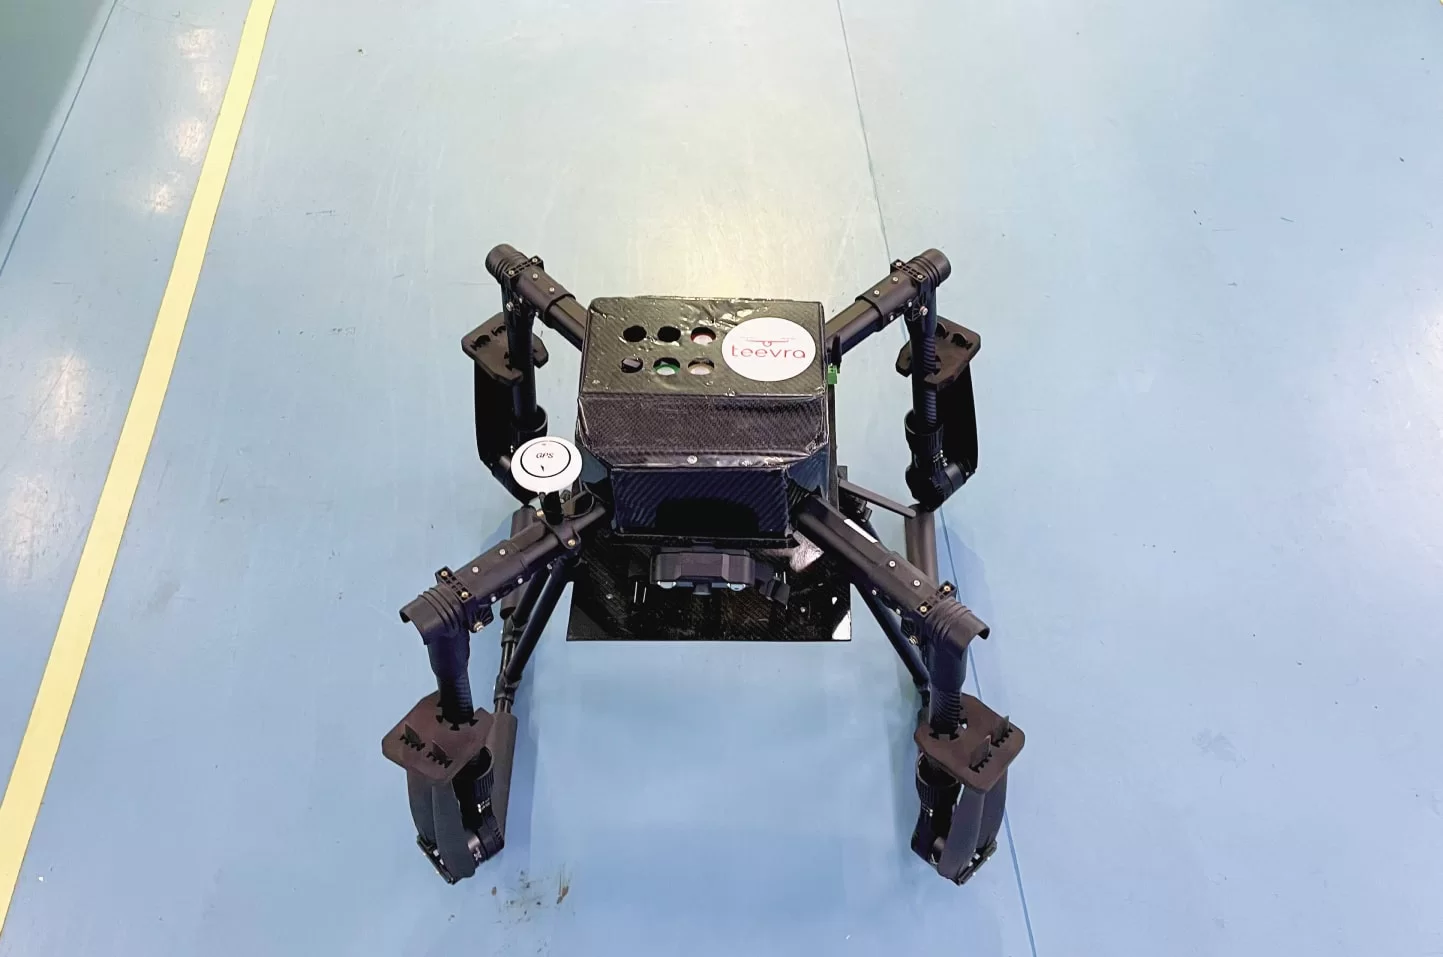 prana air quadcopter air quality drone